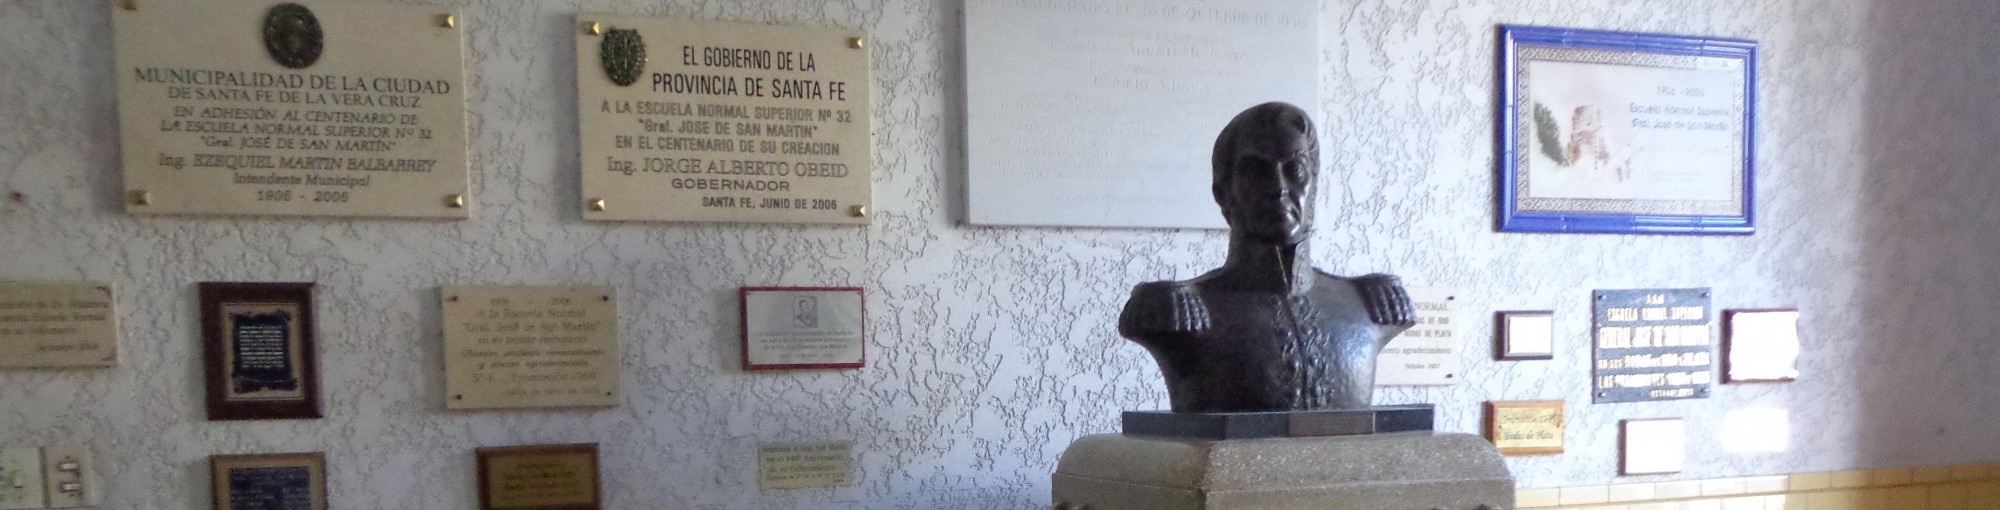 Escuela Normal N° 32 "Gral. José de San Martín"